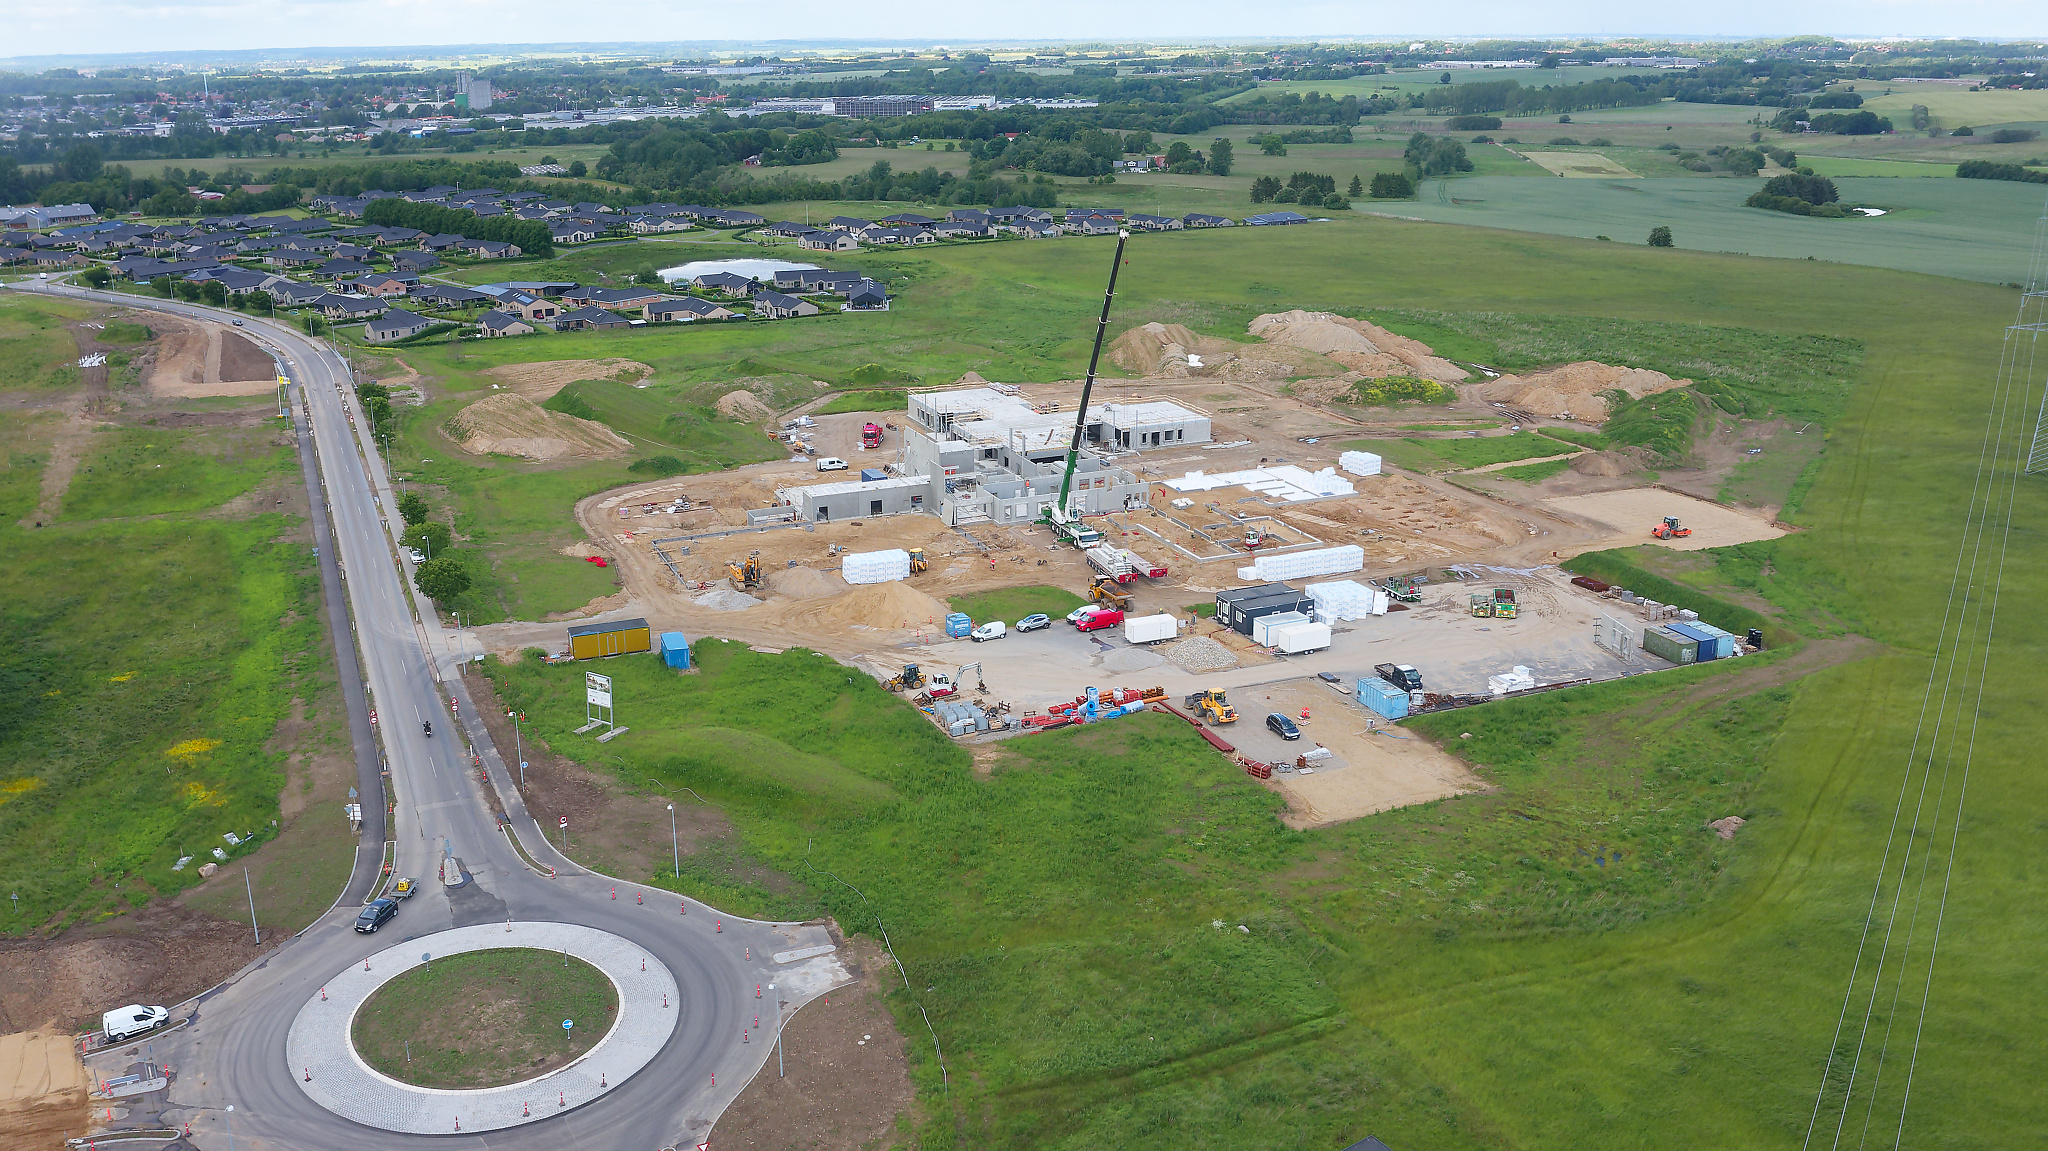 Dronefoto af byggepladsen med Hørning i baggrunden.